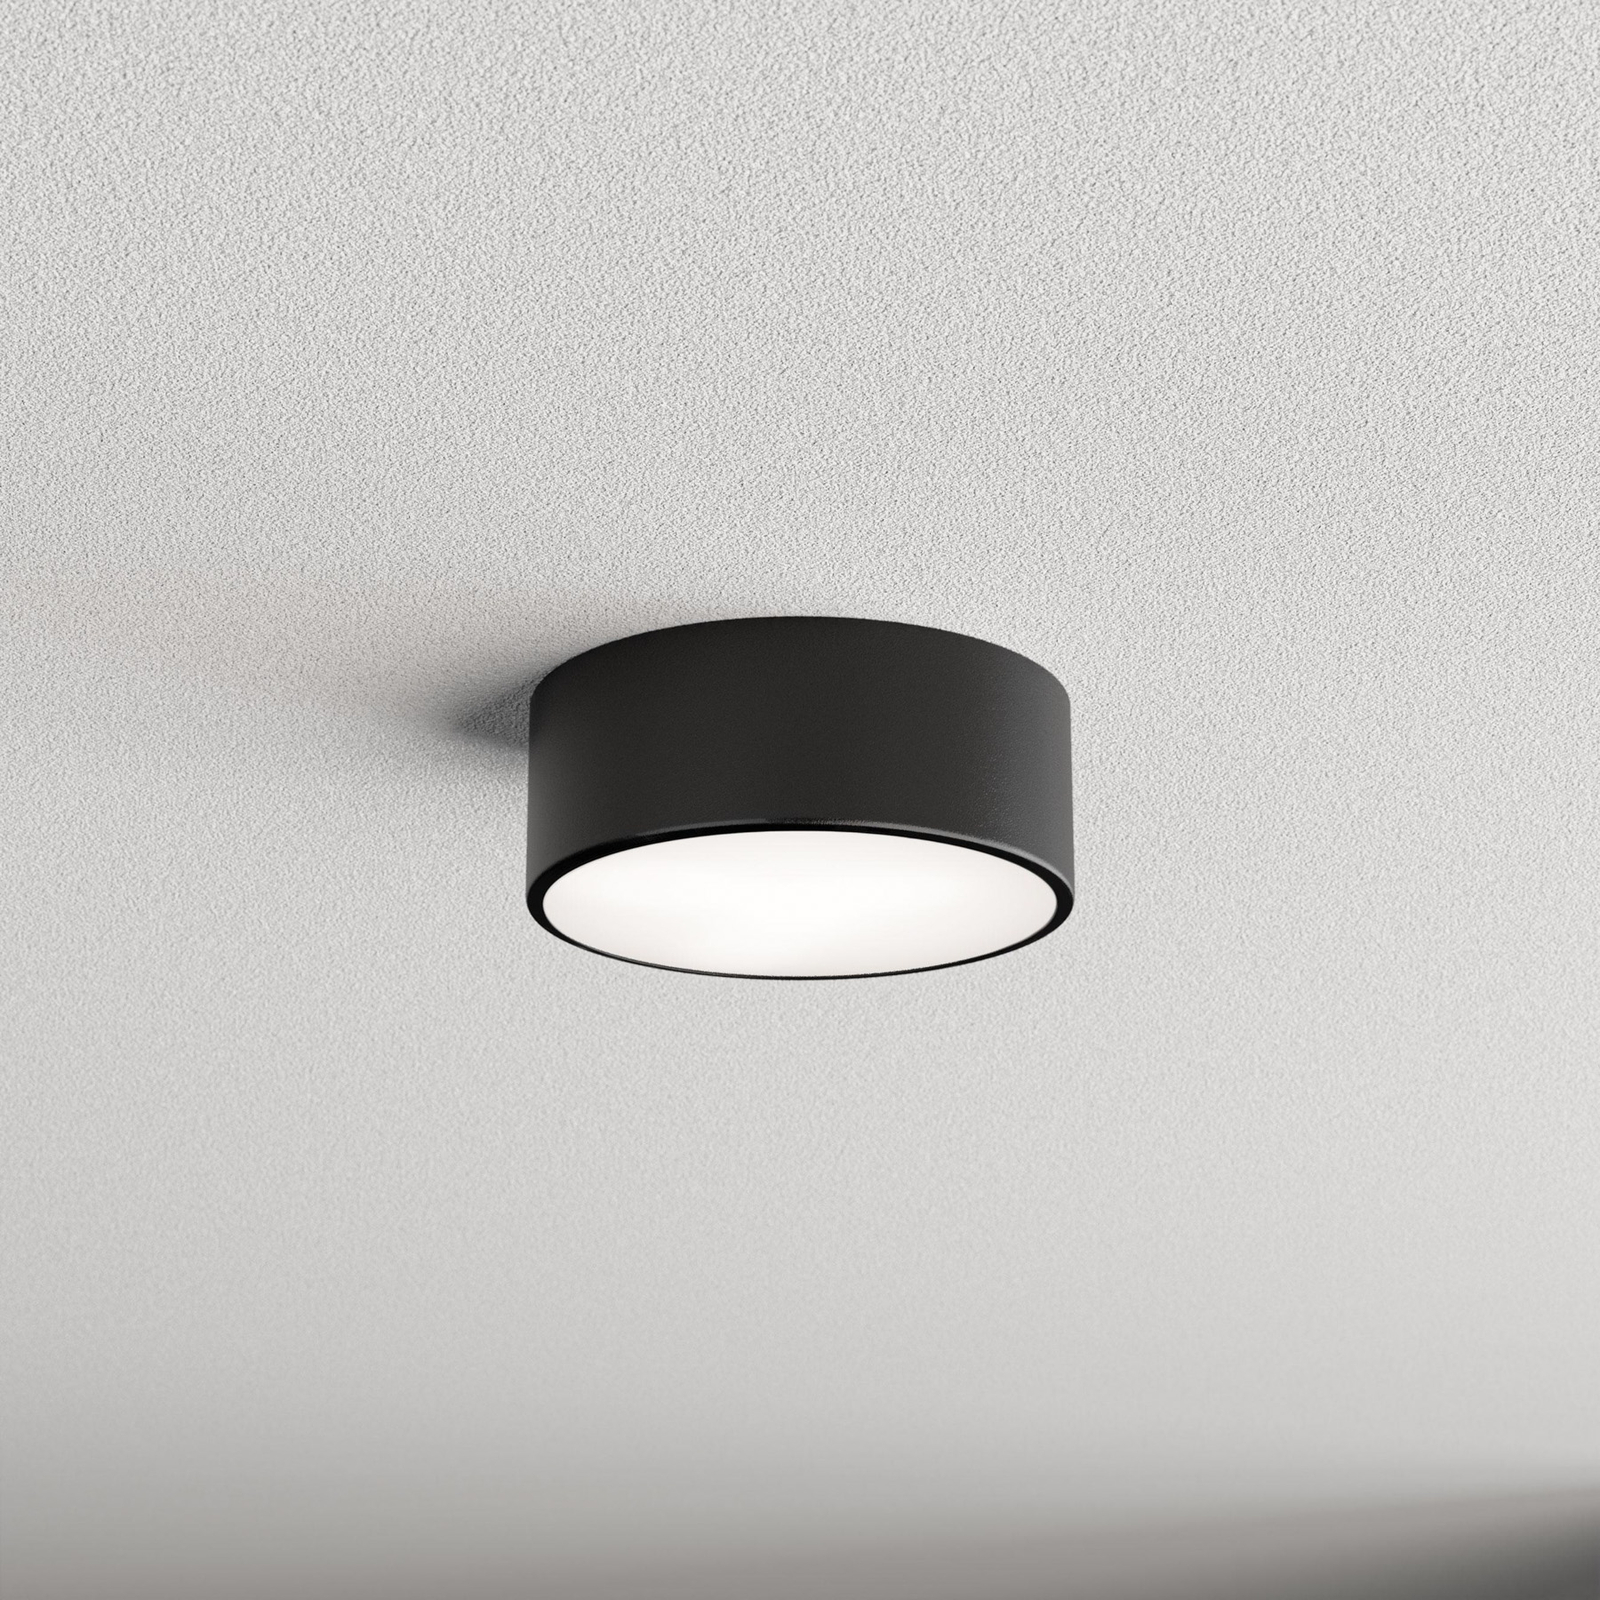 Cleo plafondlamp, zwart, Ø 20 cm, metaal, IP54